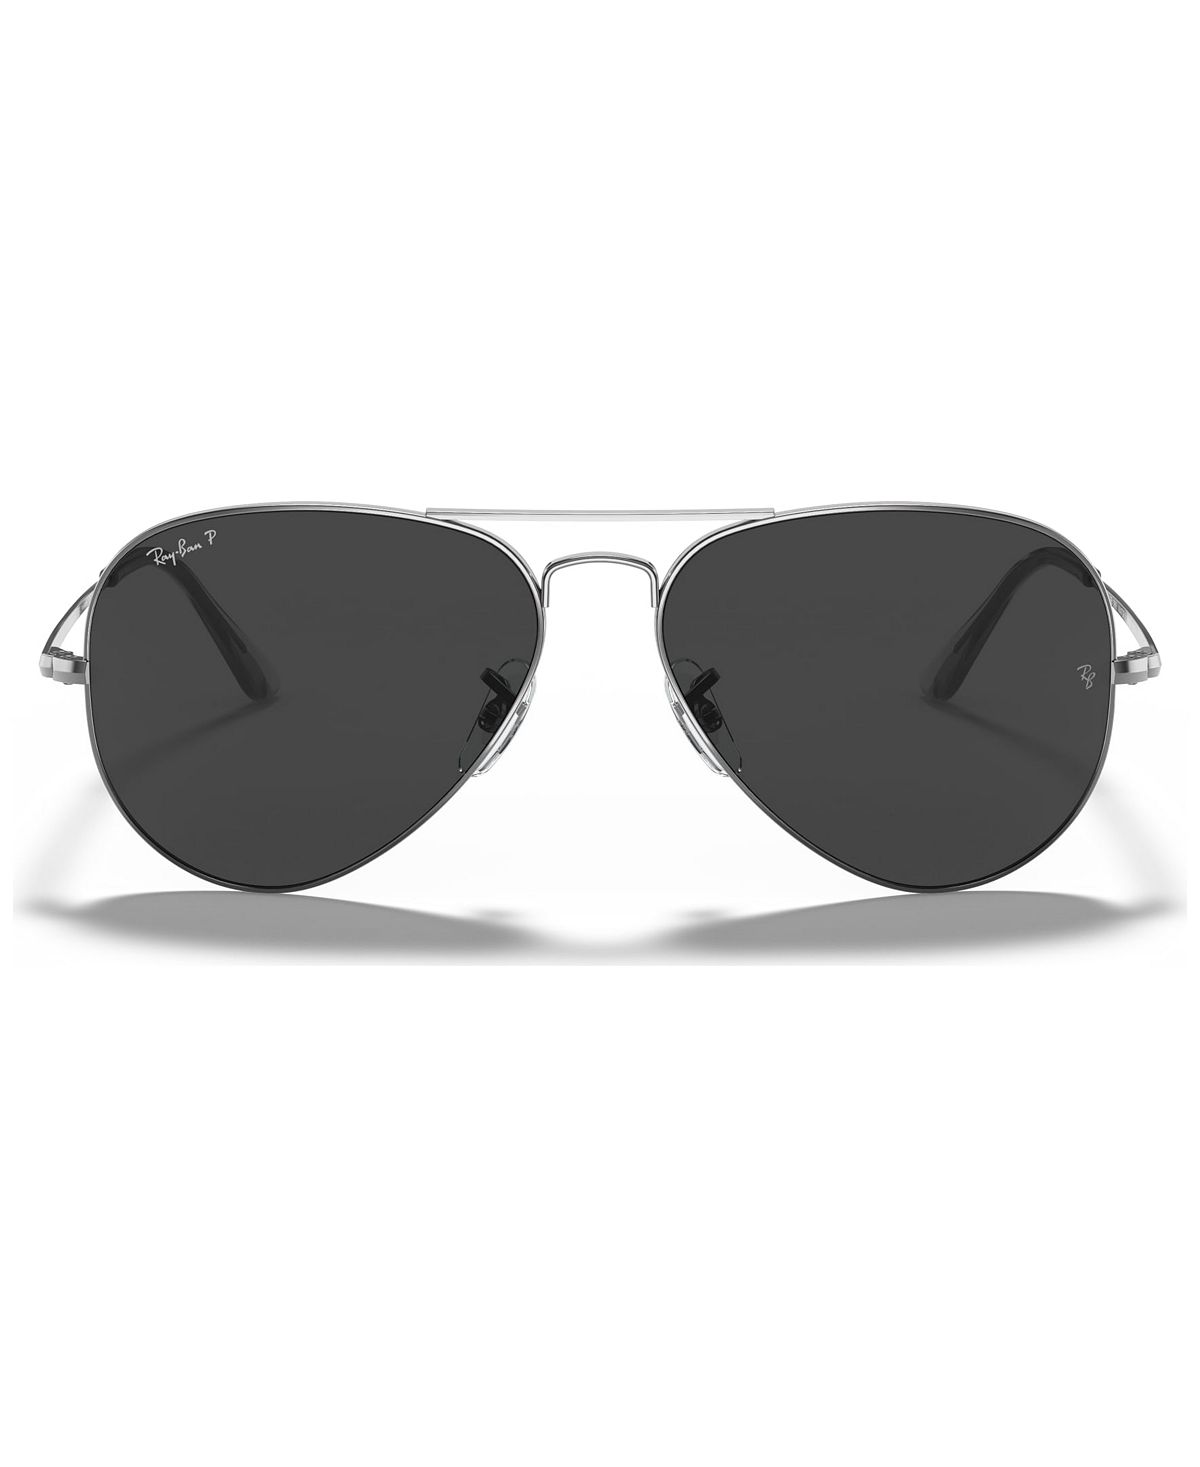 Поляризованные солнцезащитные очки унисекс, RB3689 Ray-Ban цена и фото